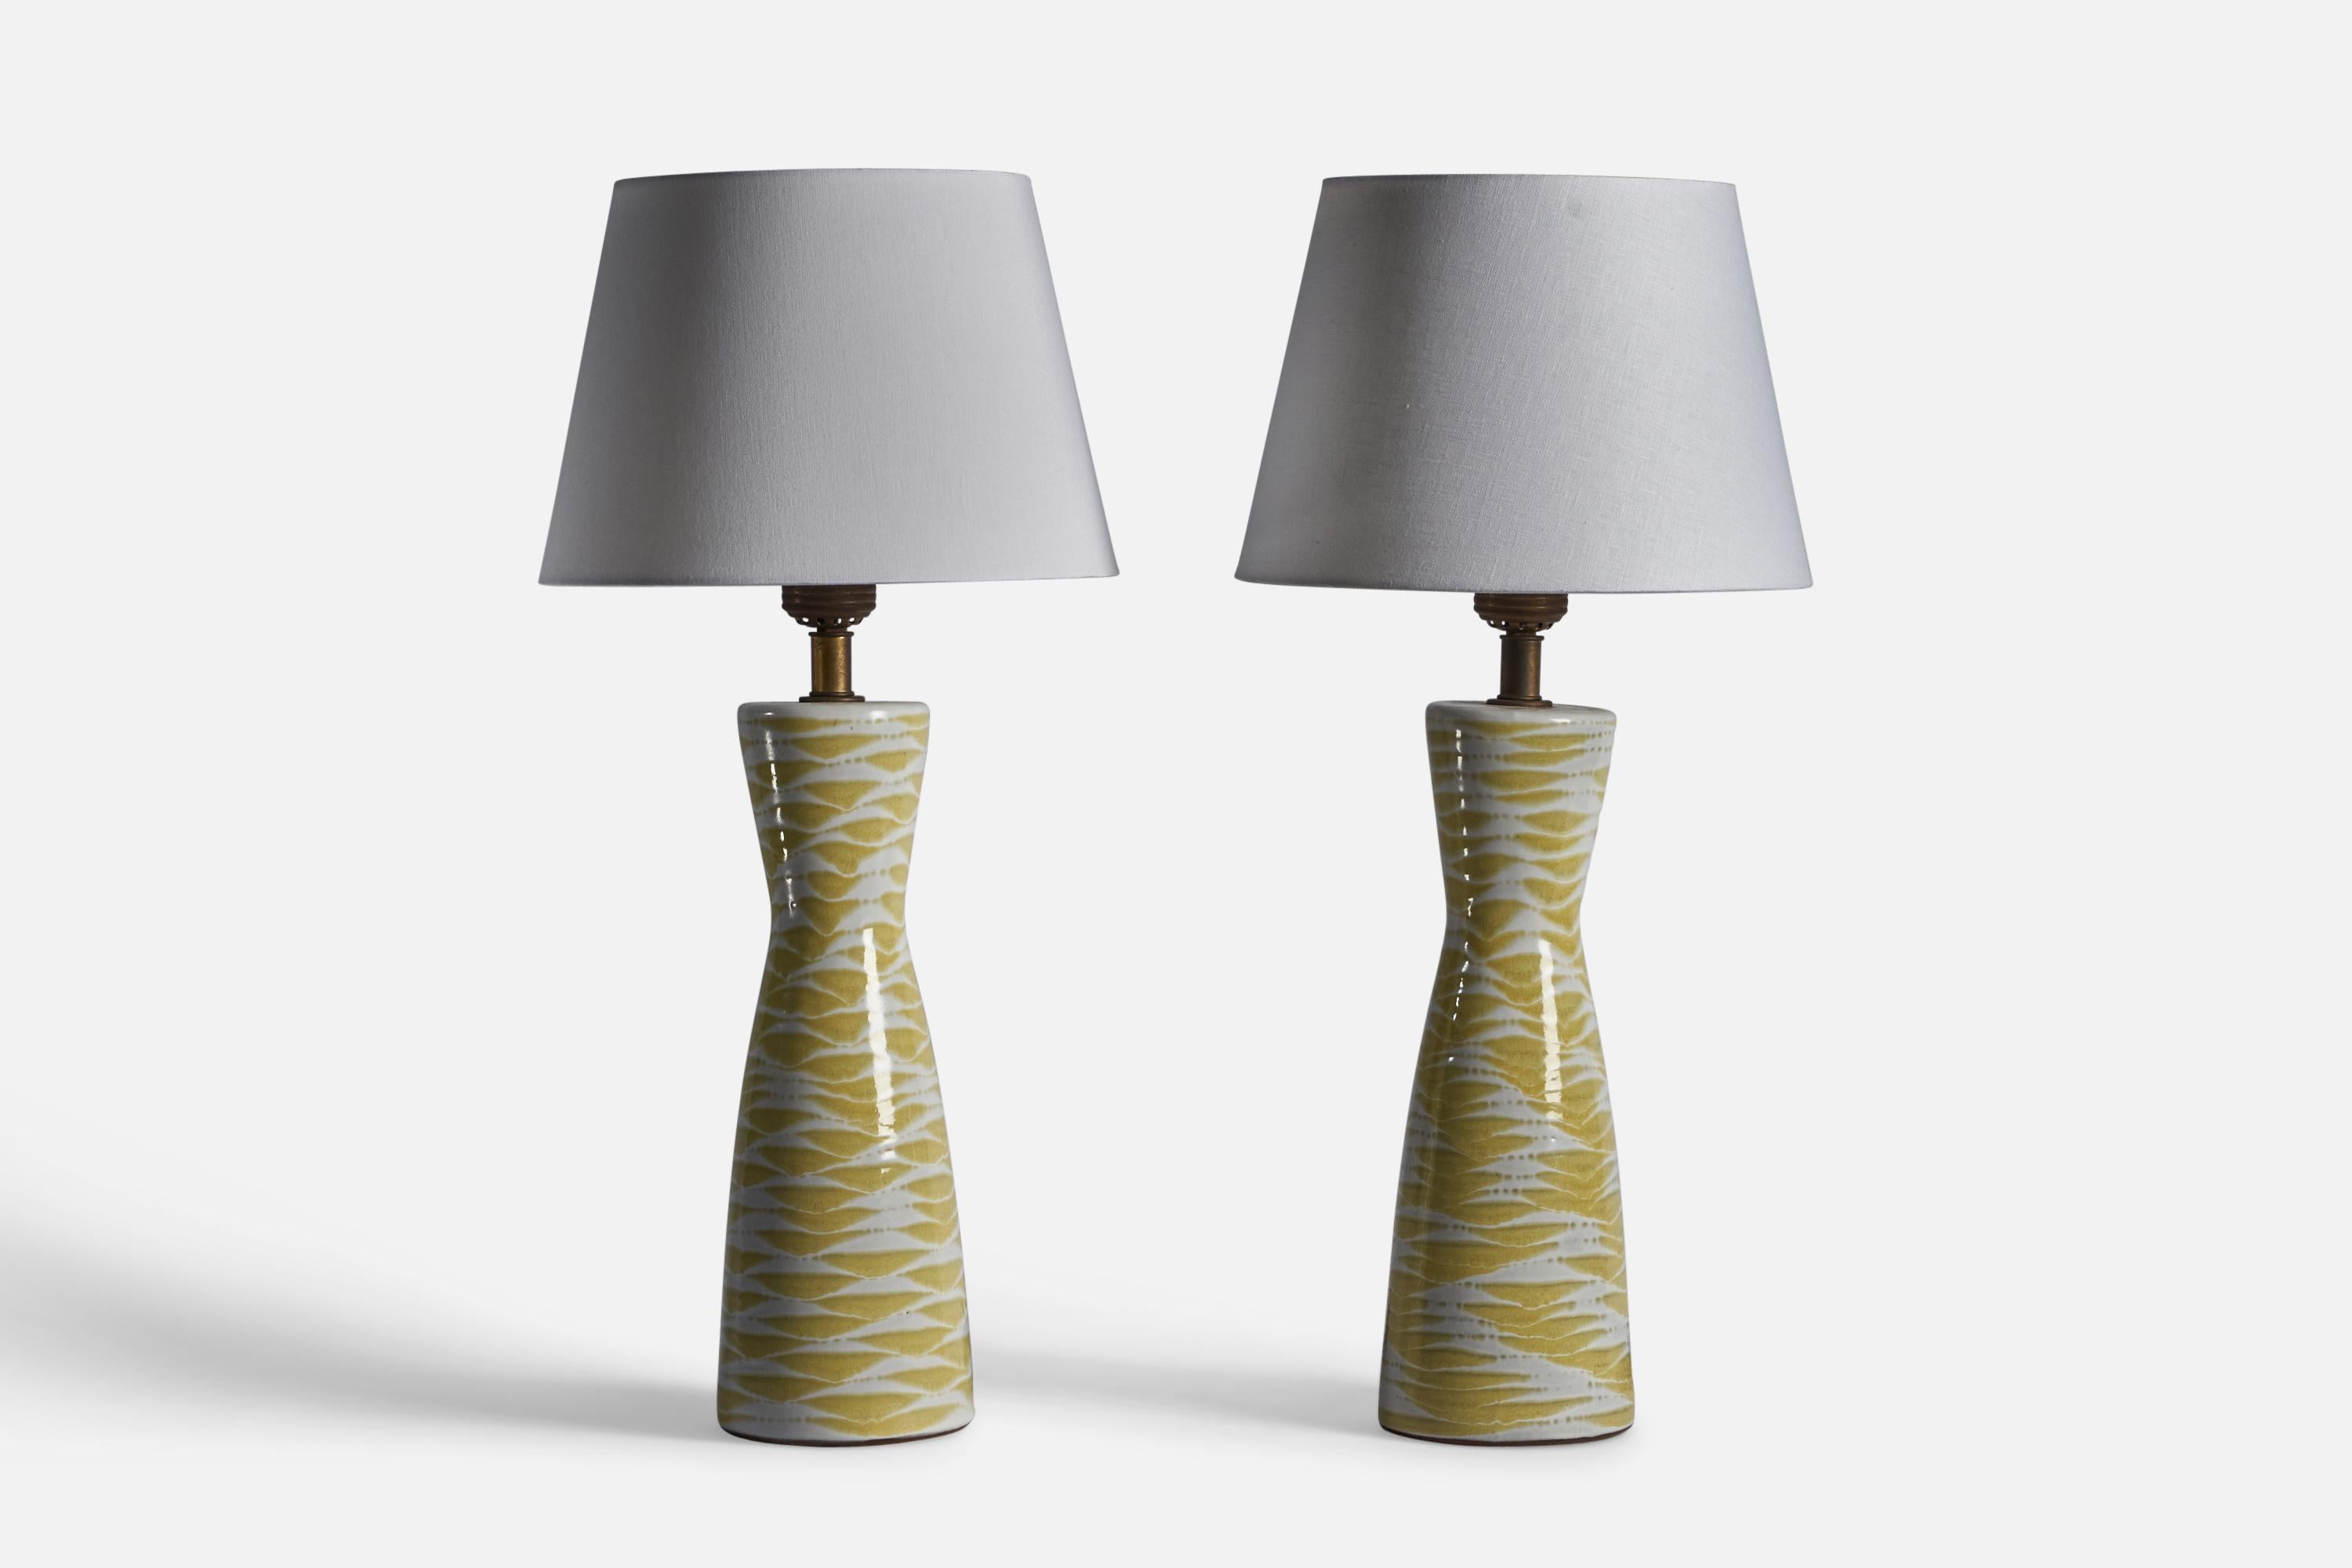 Paire de grandes lampes de table en céramique émaillée jaune et en laiton, conçues par Lee Rosen et produites par DESIGN-TECHNICS, États-Unis, vers les années 1950.

Dimensions de la lampe (pouces) : 30